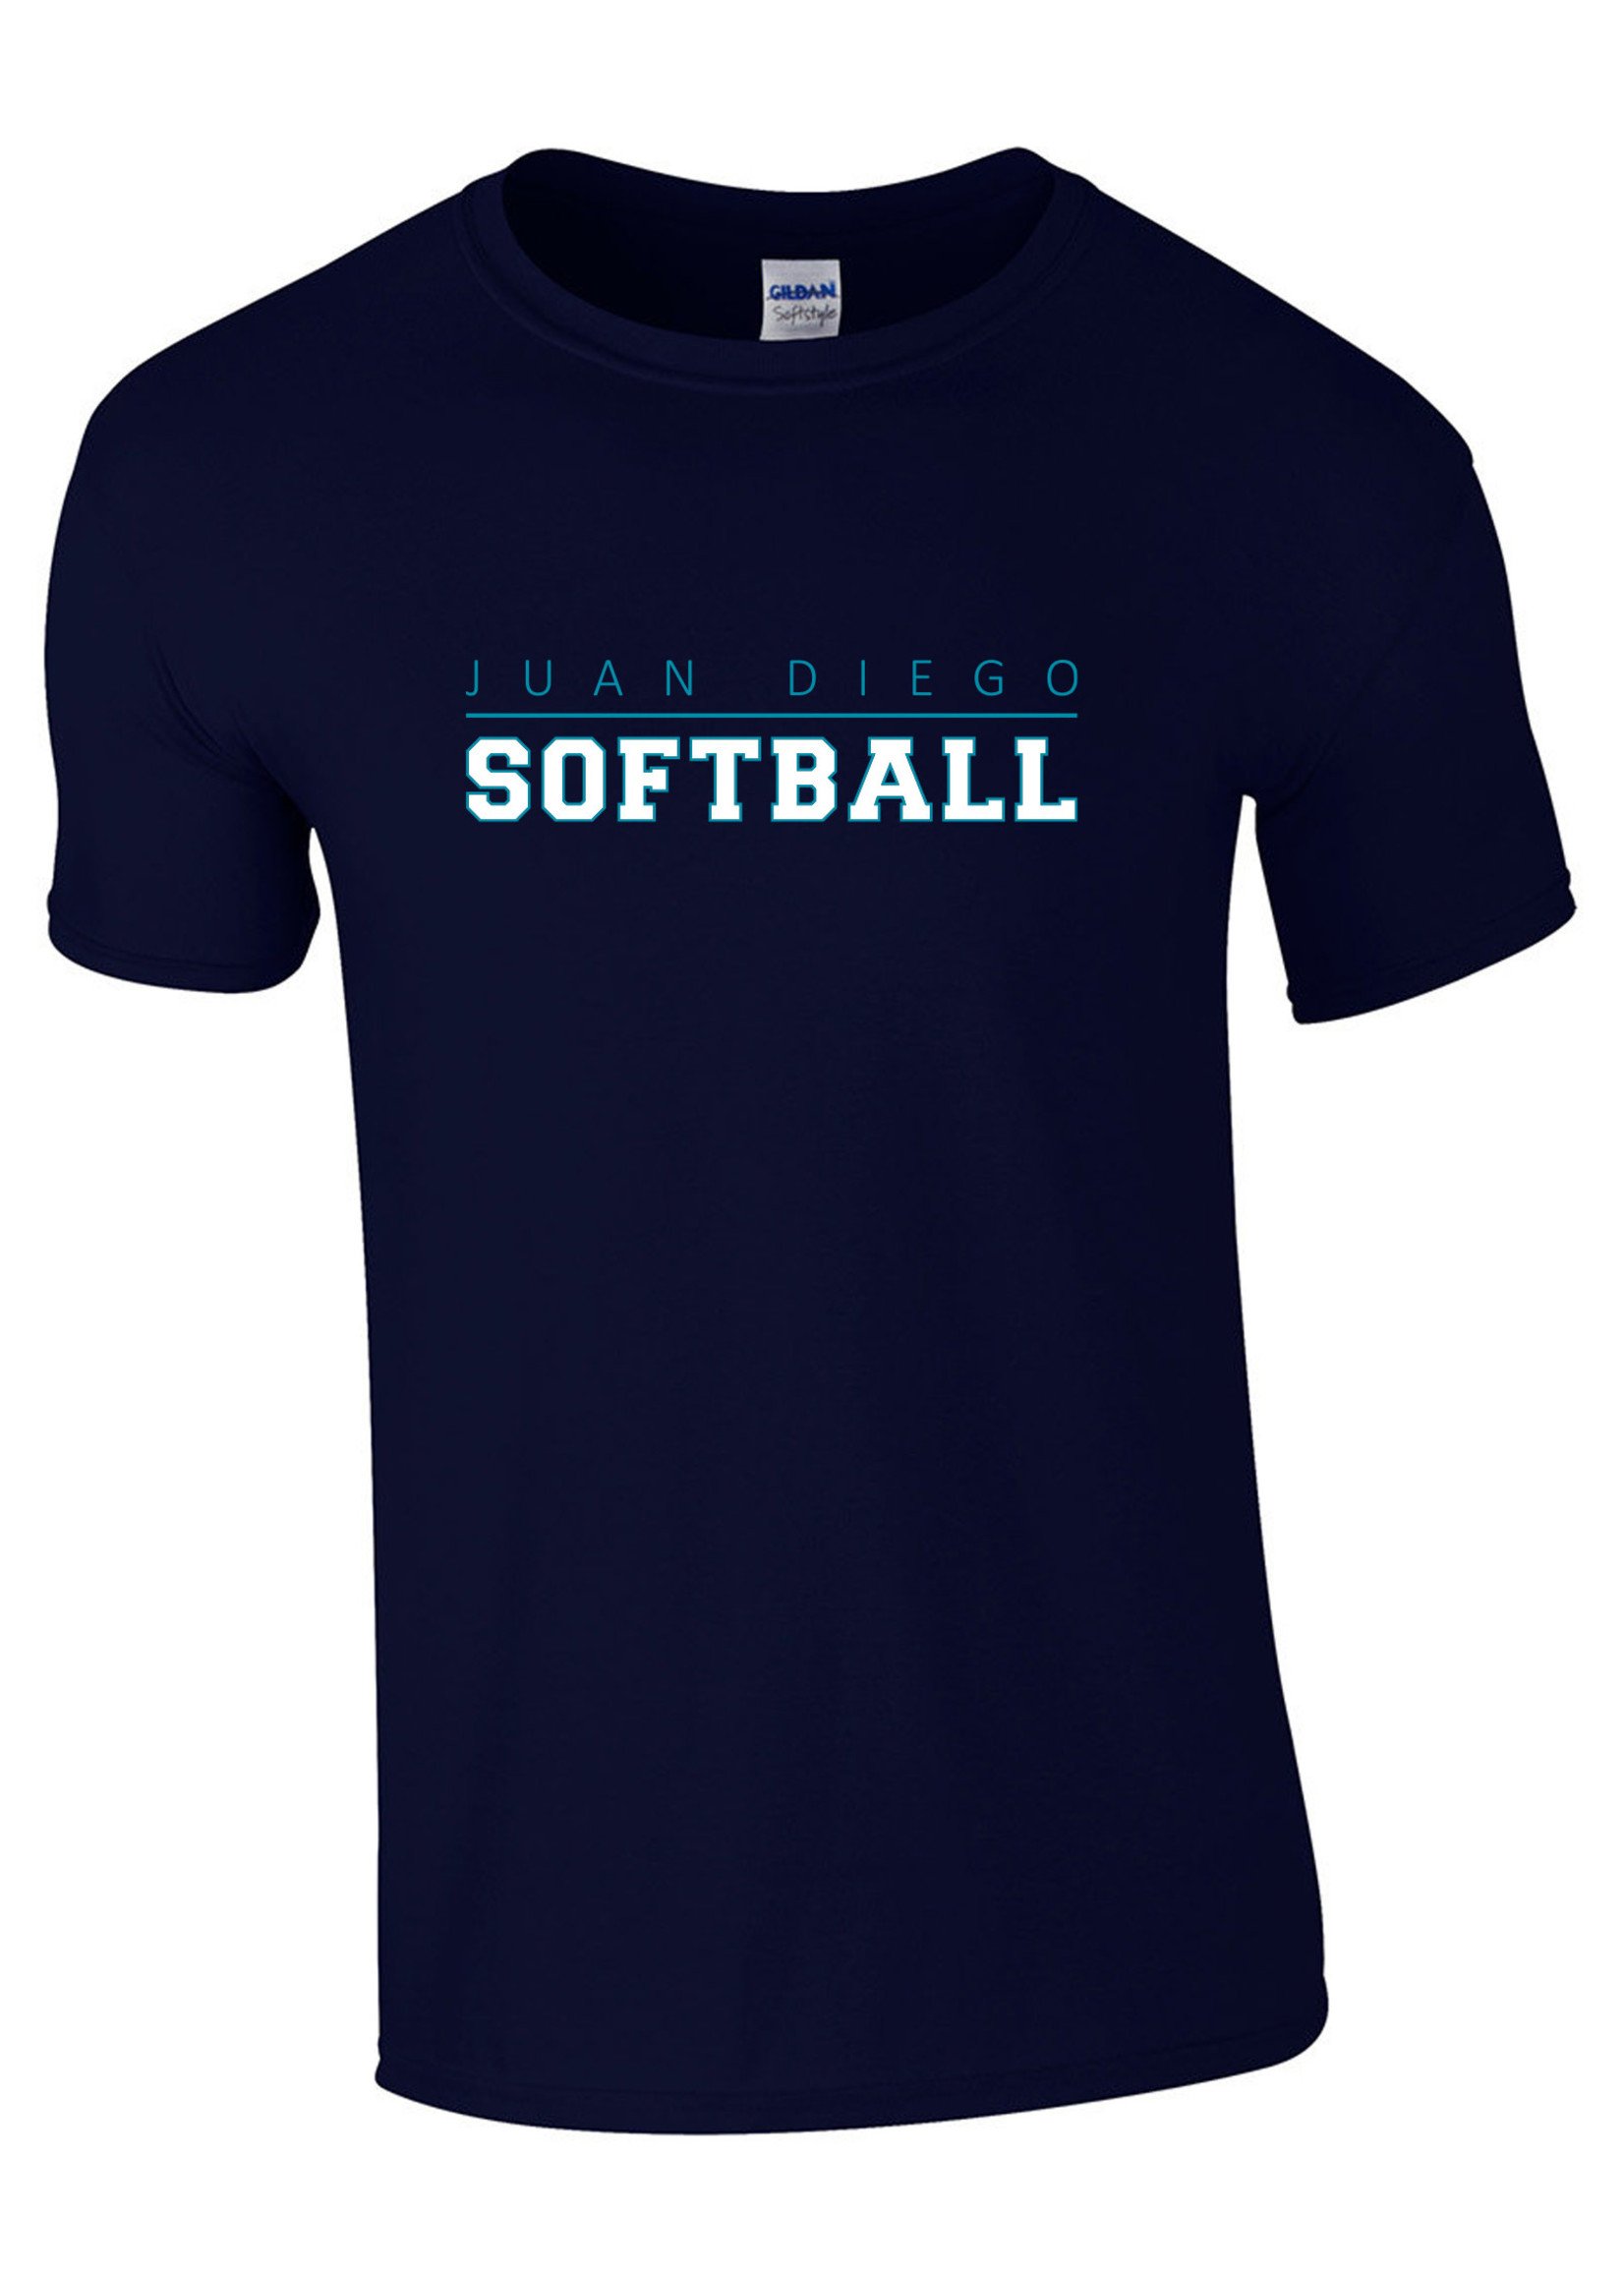 NON-UNIFORM JD Softball Spirit T-Shirt, JD Sport Text